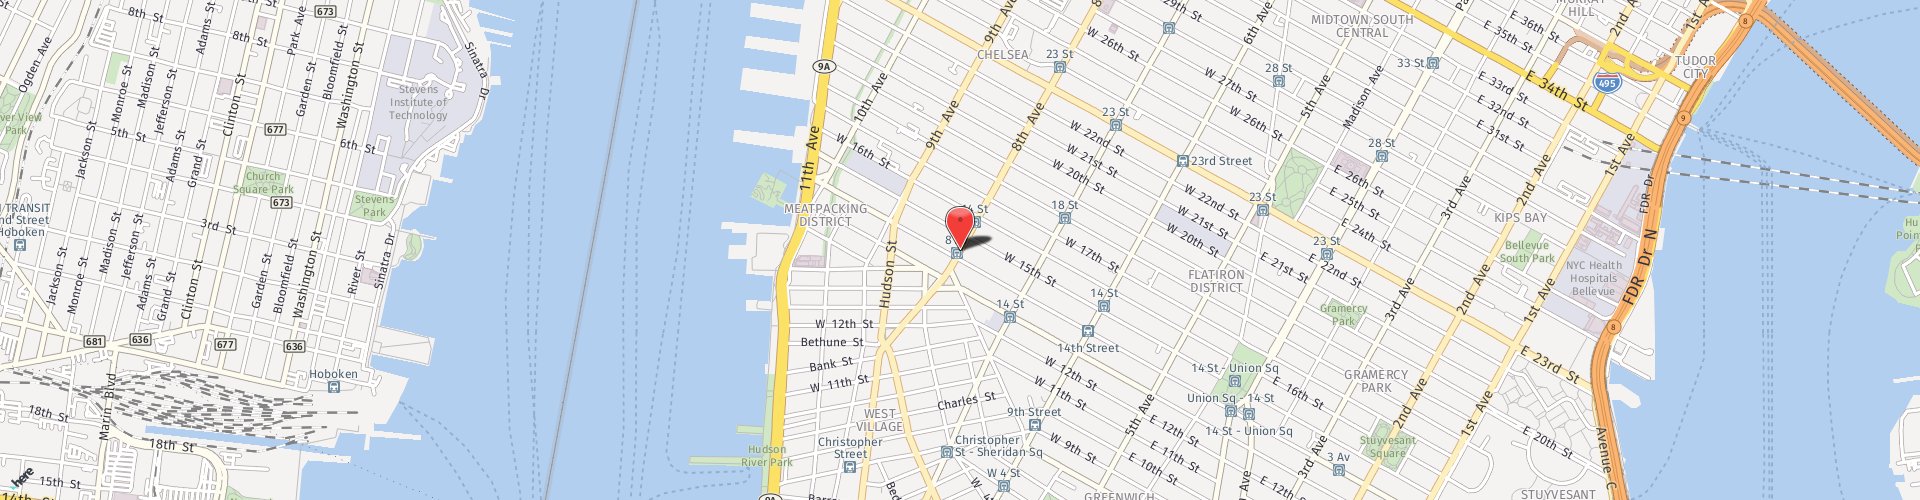 Location Map: 80 8th Avenue New York, NY 10011